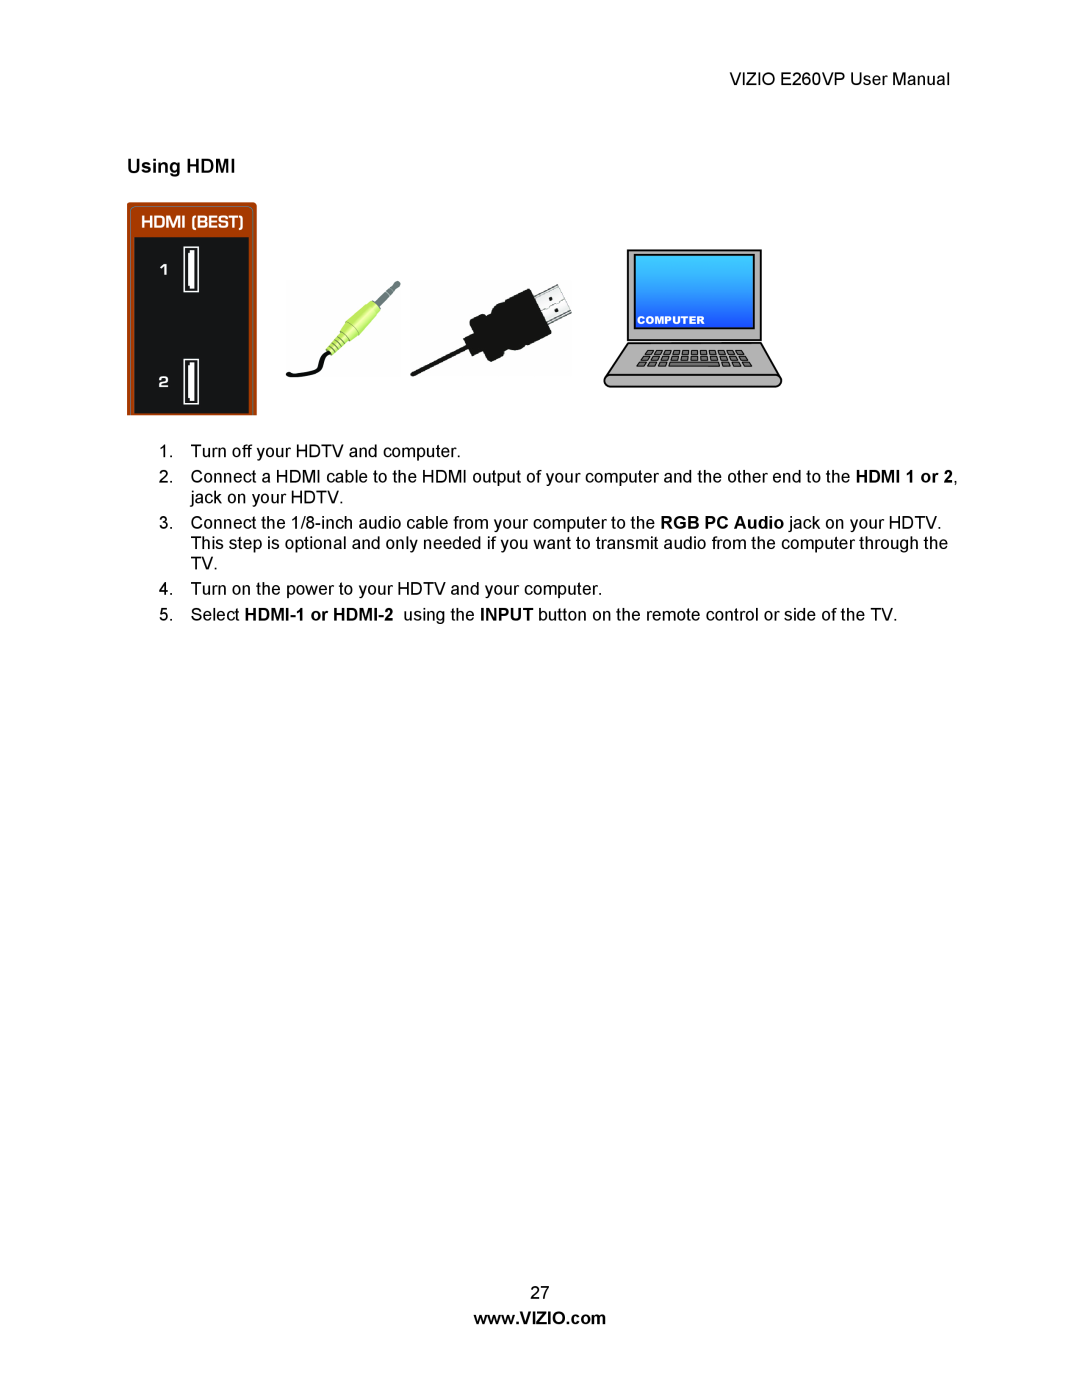 Vizio E260VP user manual Using HDMI 